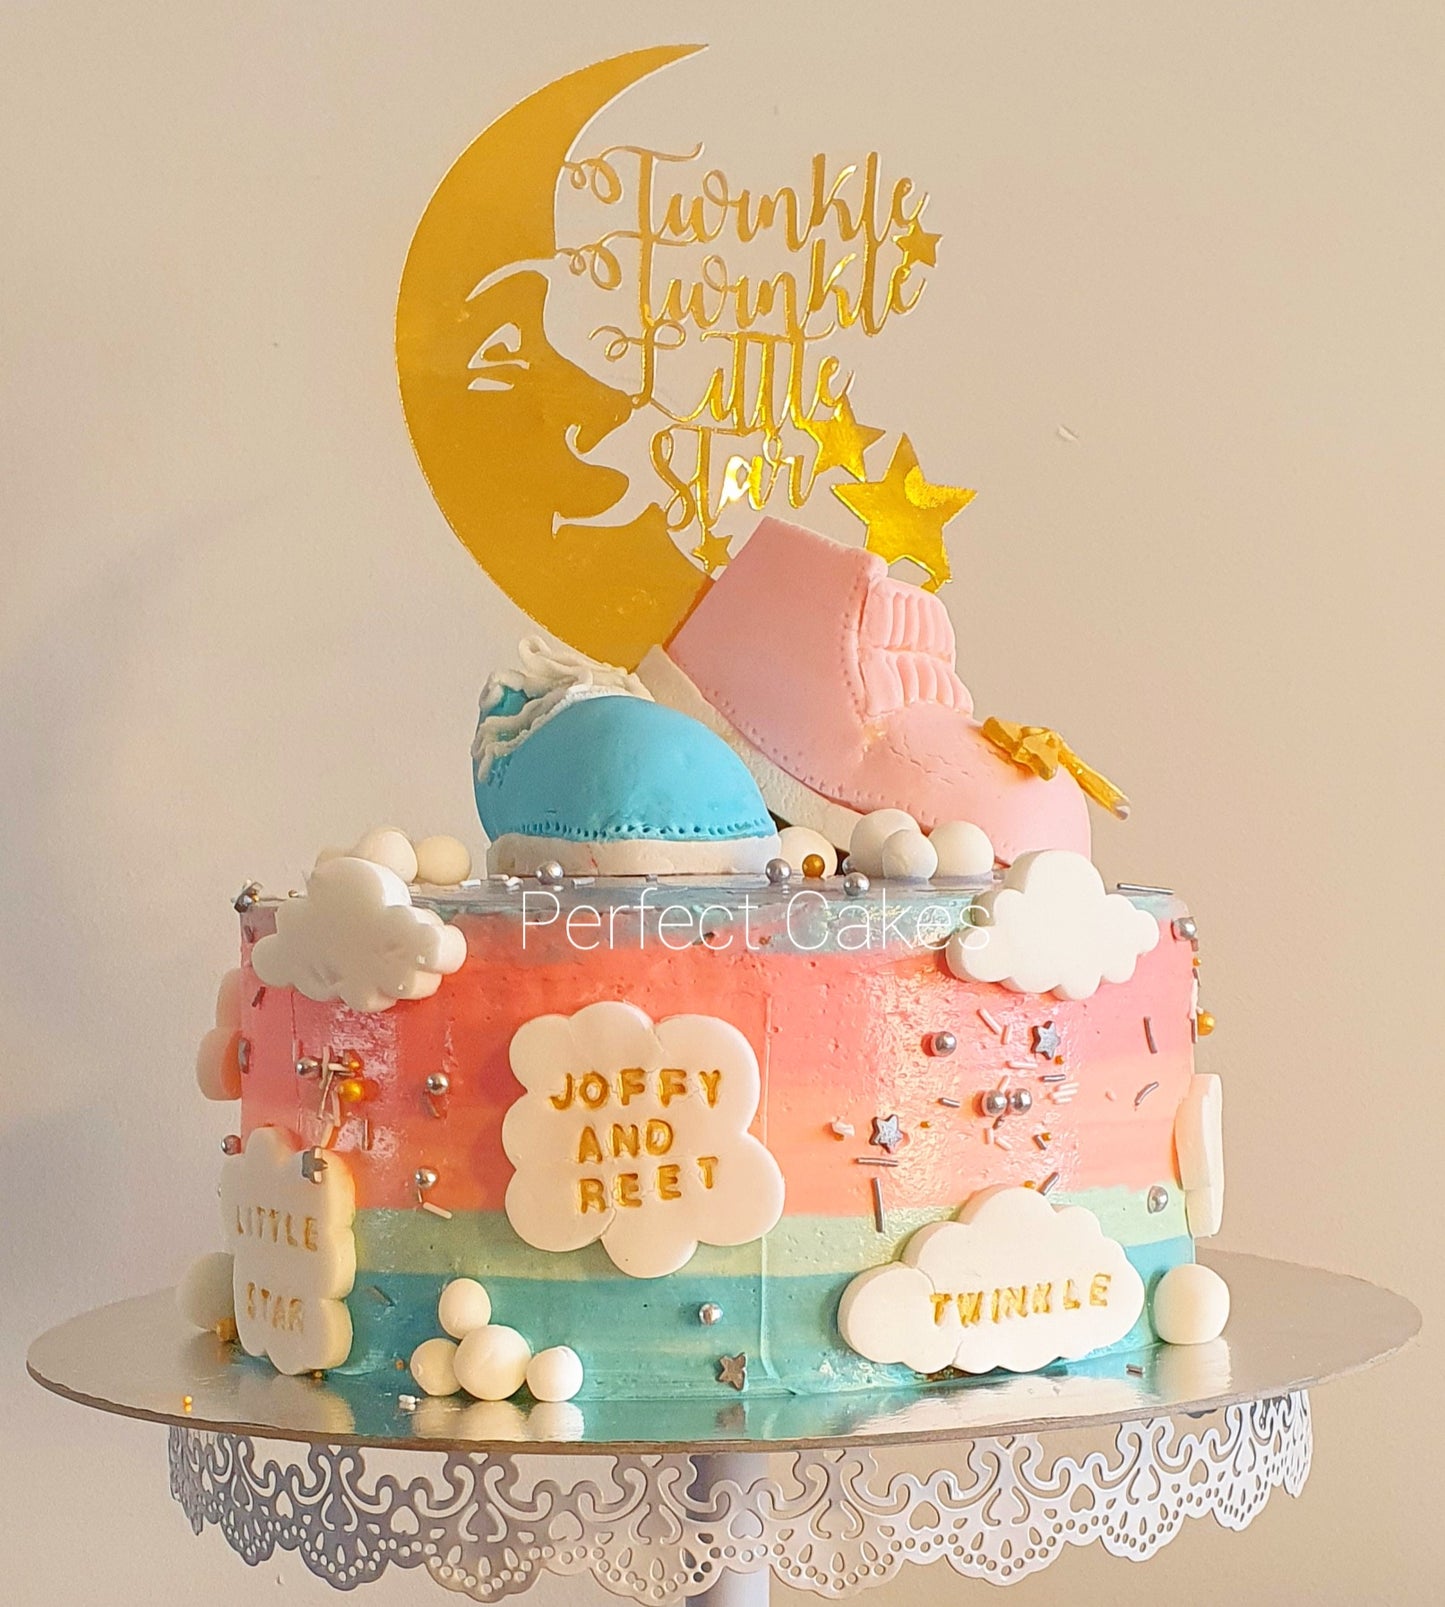 Twinkle Twinkle Gender Reveal Cake